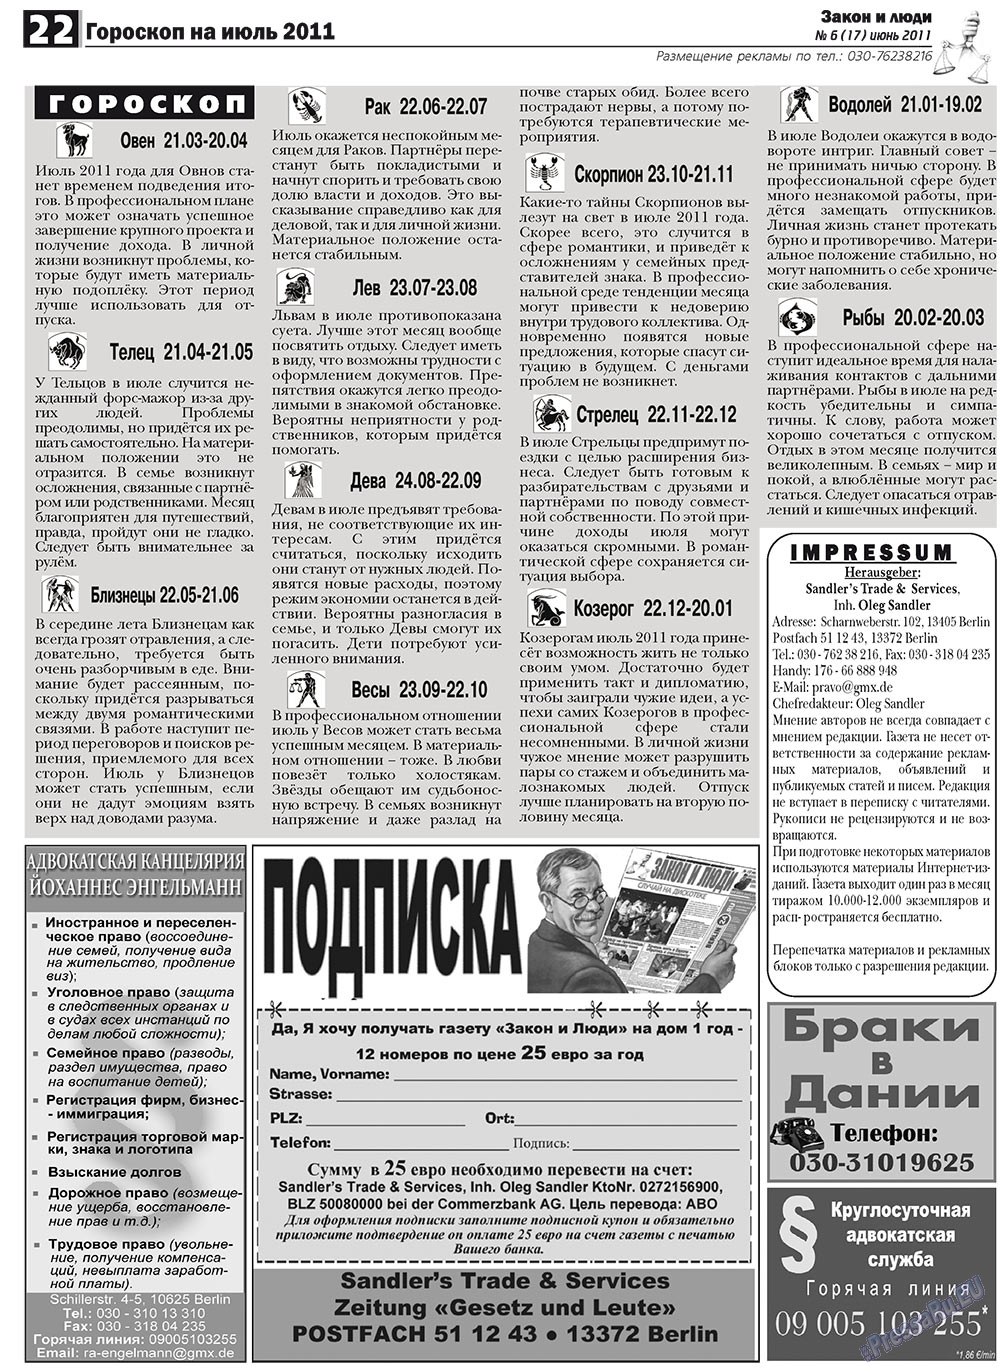 Закон и люди, газета. 2011 №6 стр.22